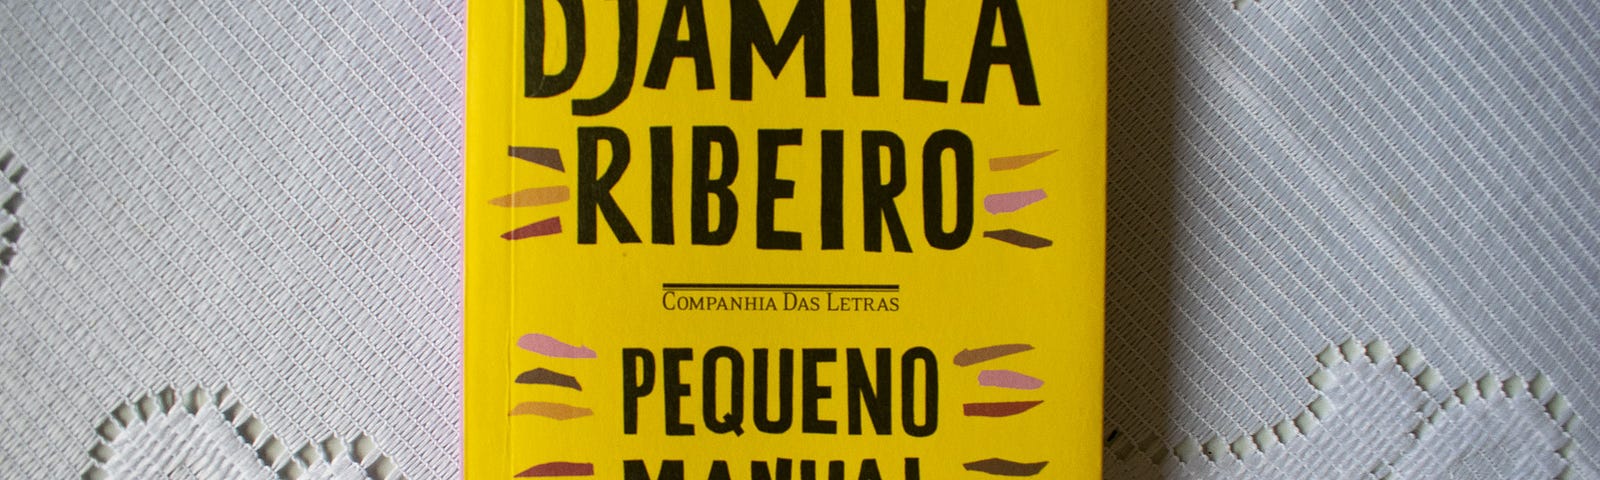 Capa do livro Pequeno Manual Antirracista, de Djamila Ribeiro